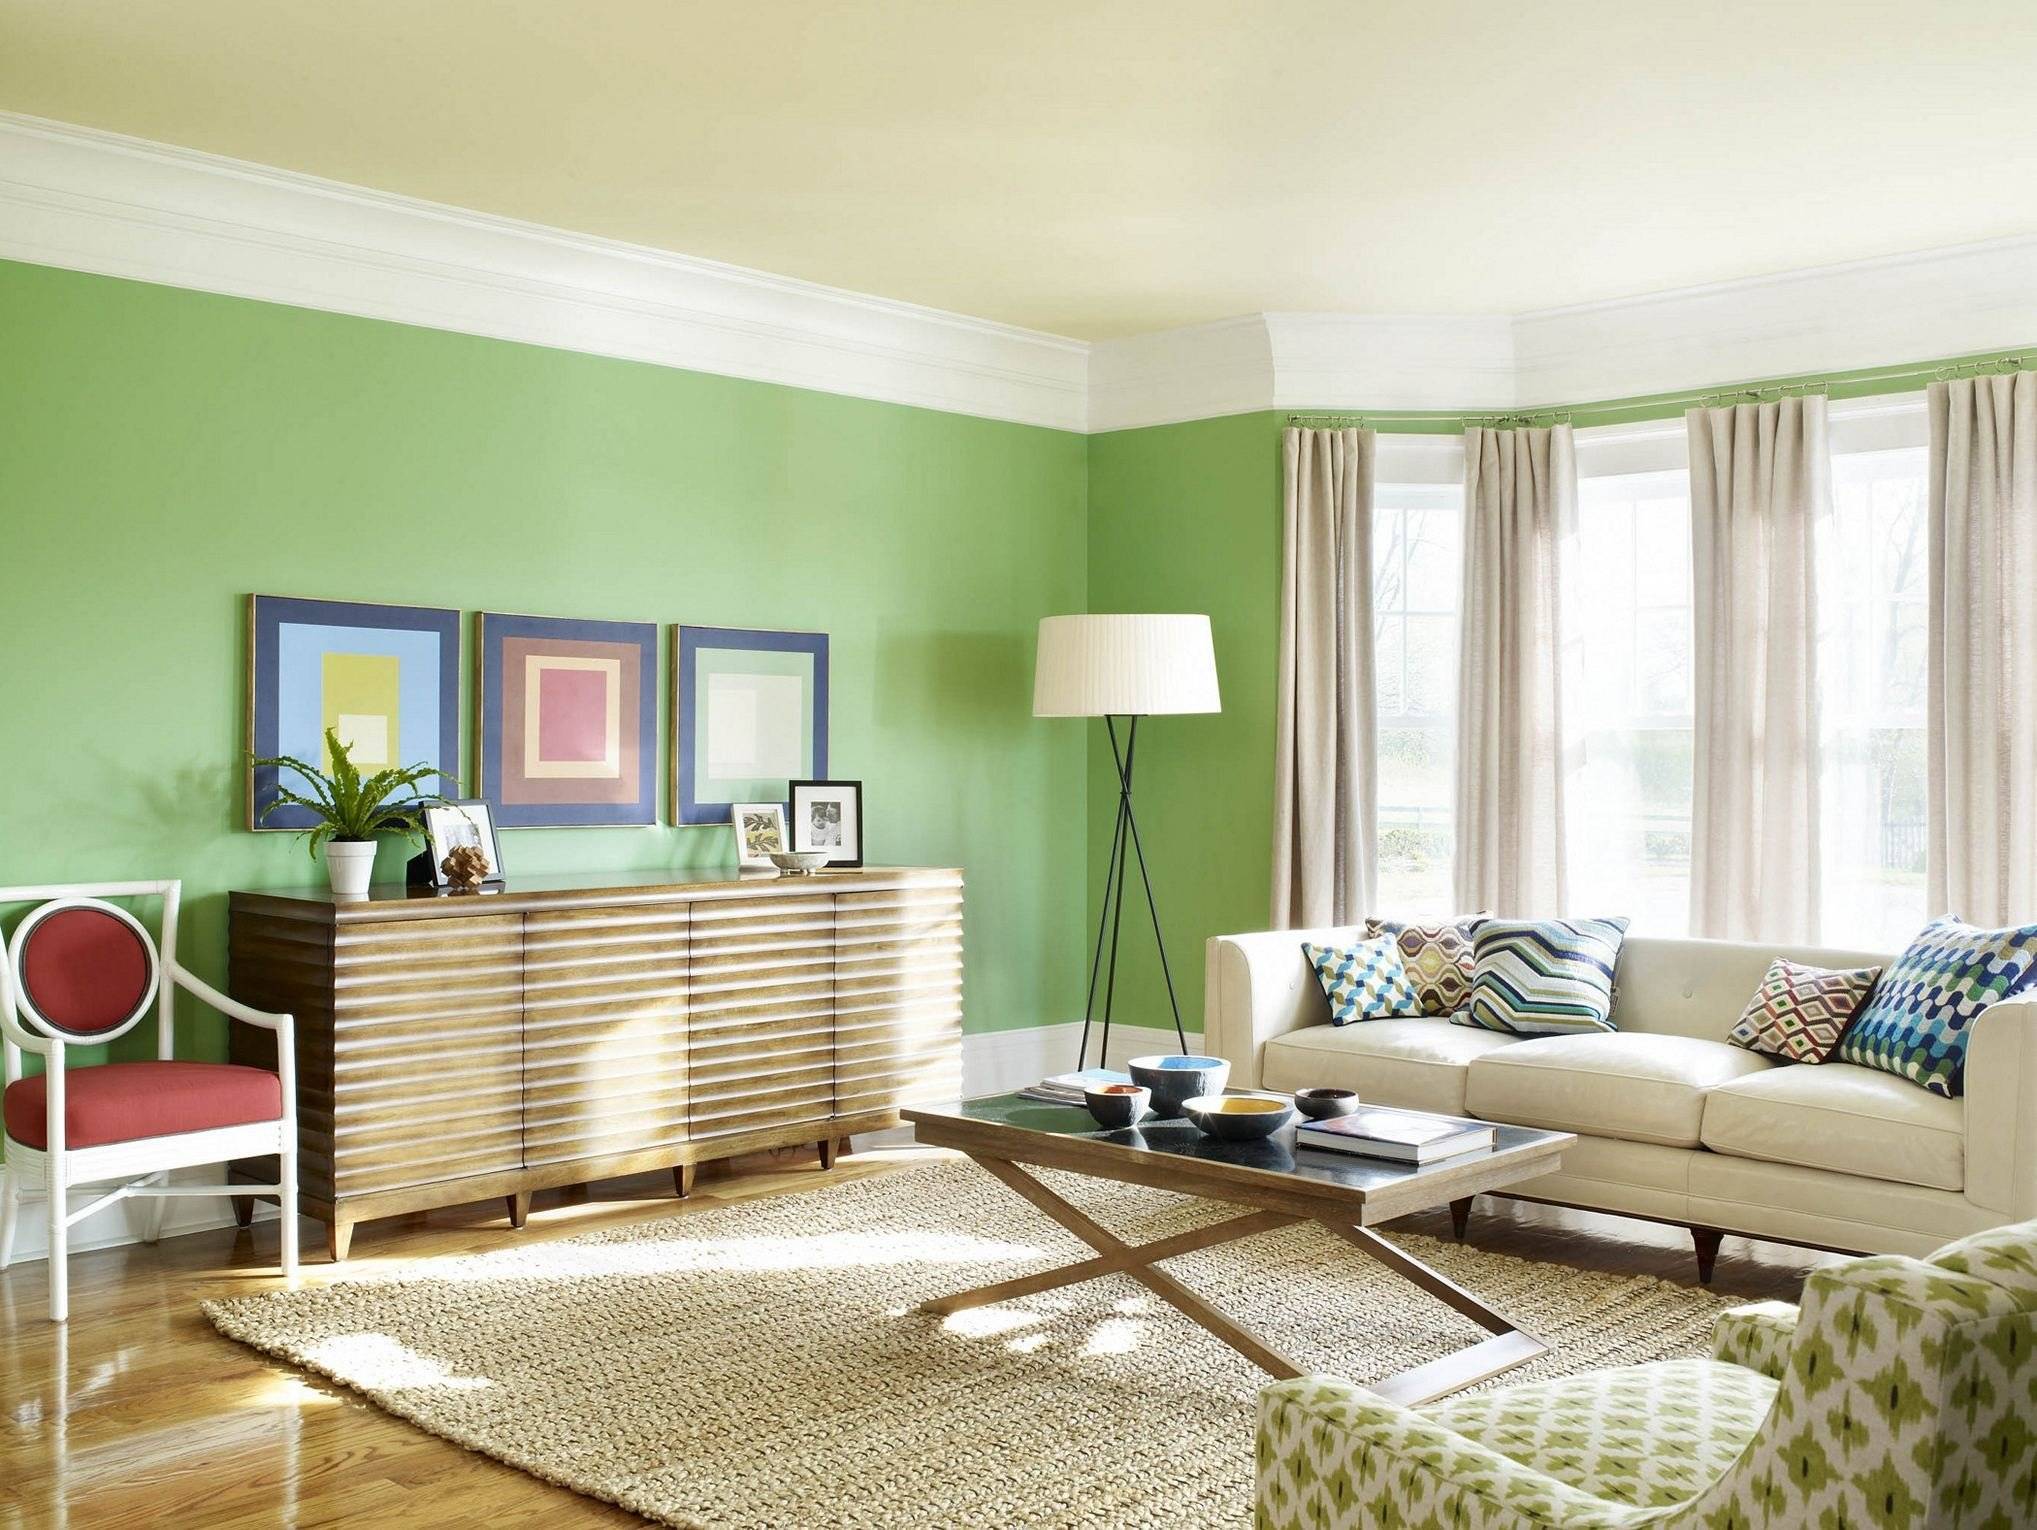 Обои для гостиной (51 фото): в интерьере комнаты, дизайн в цветах, нейтральные для стен, как подобрать варианты отделки